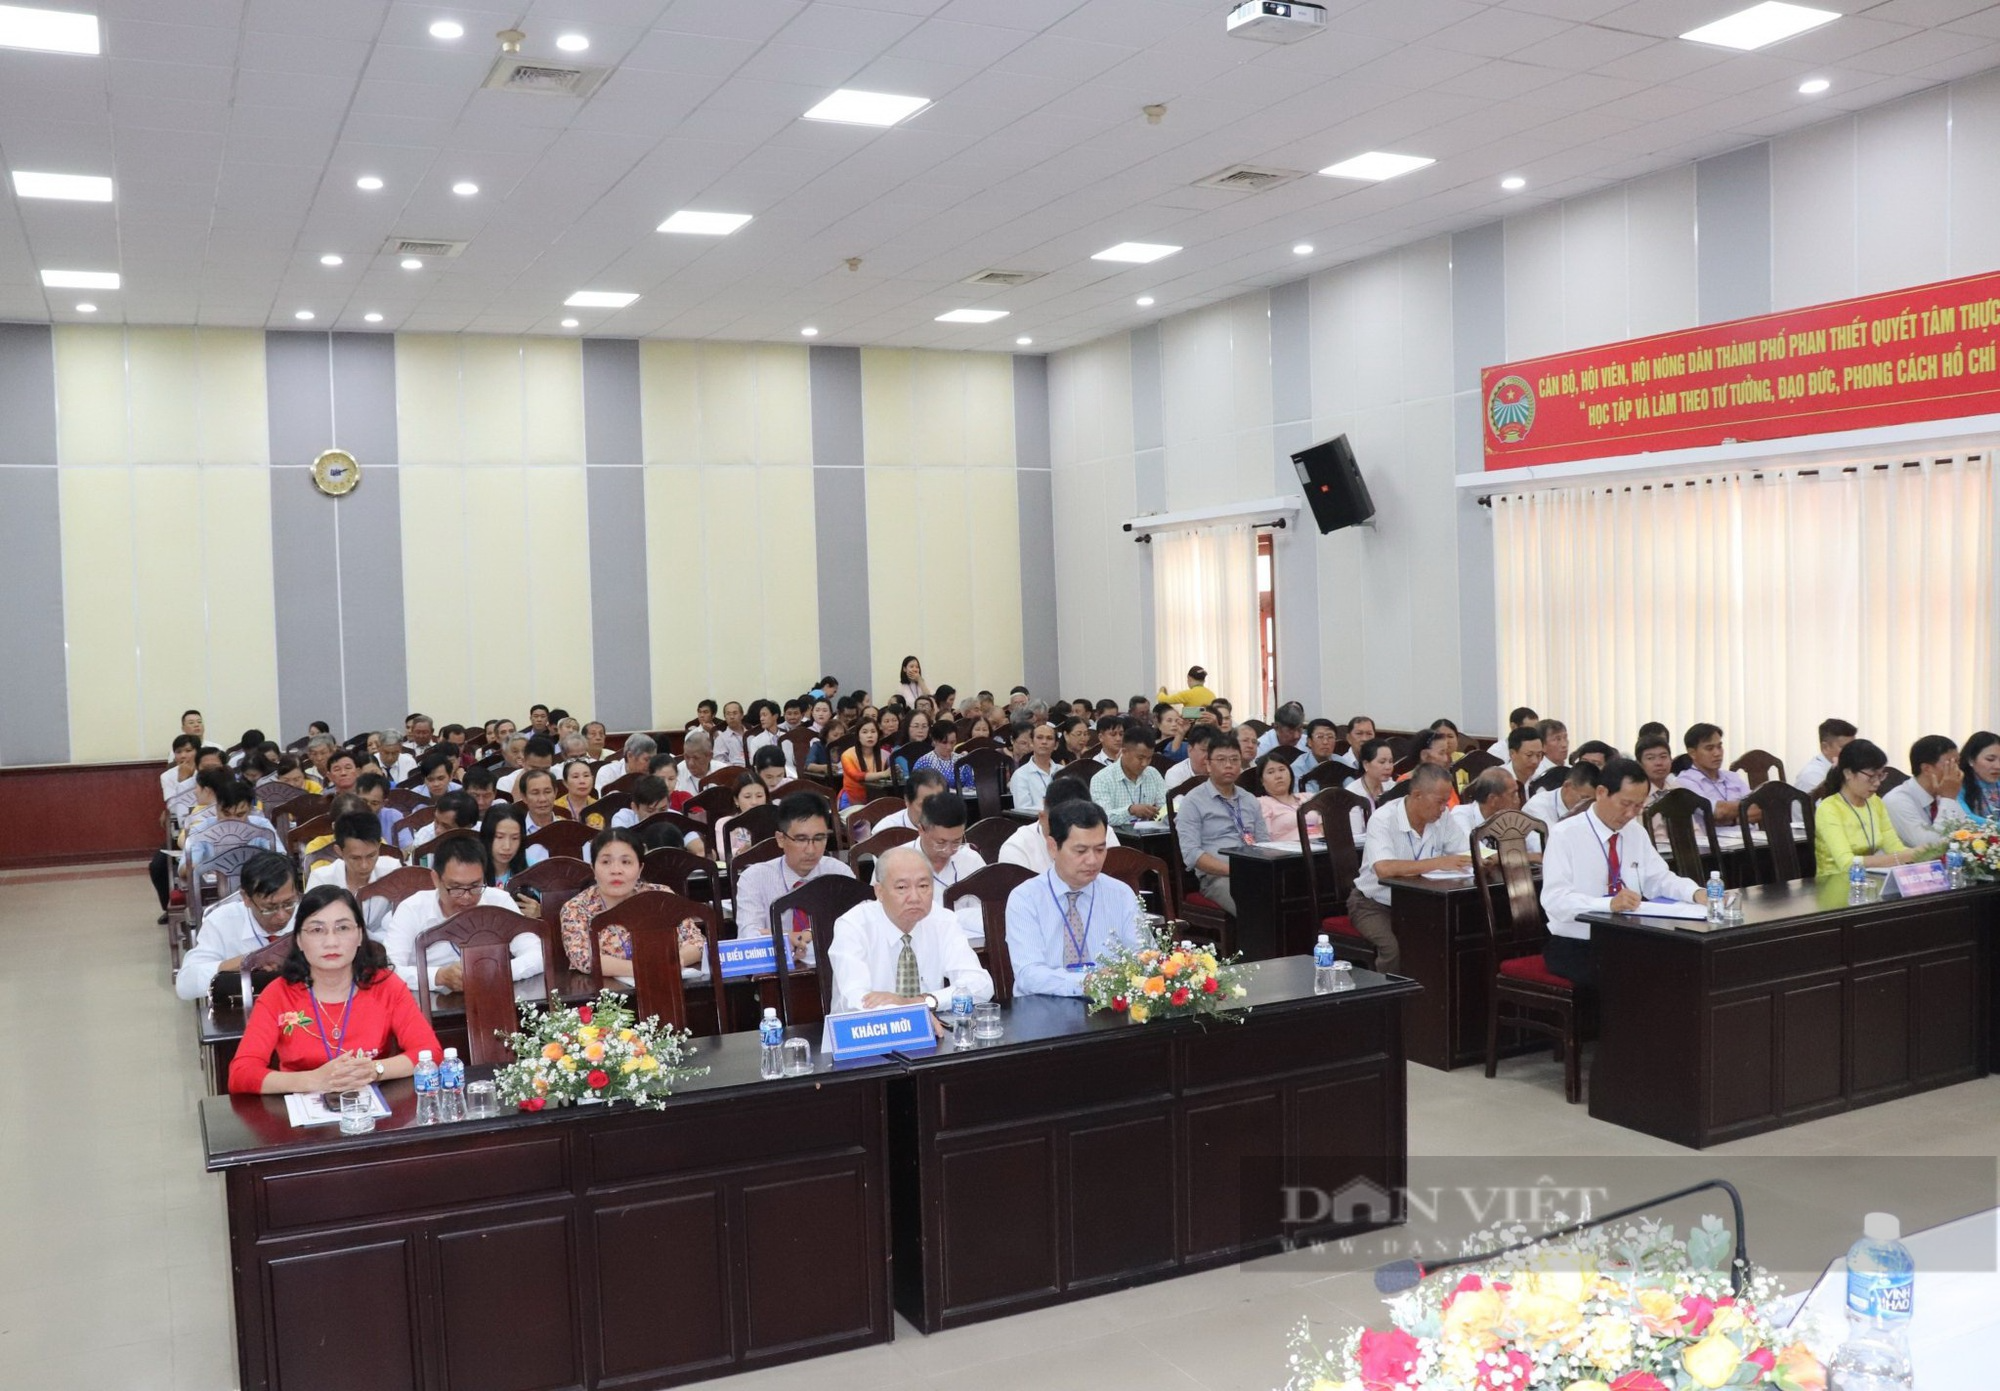 Bình Thuận: Nông dân TP.Phan Thiết đóng góp gần 17 tỷ đồng, gần 700 ngày công làm mới, sửa chữa đường giao thông nông thôn - Ảnh 2.